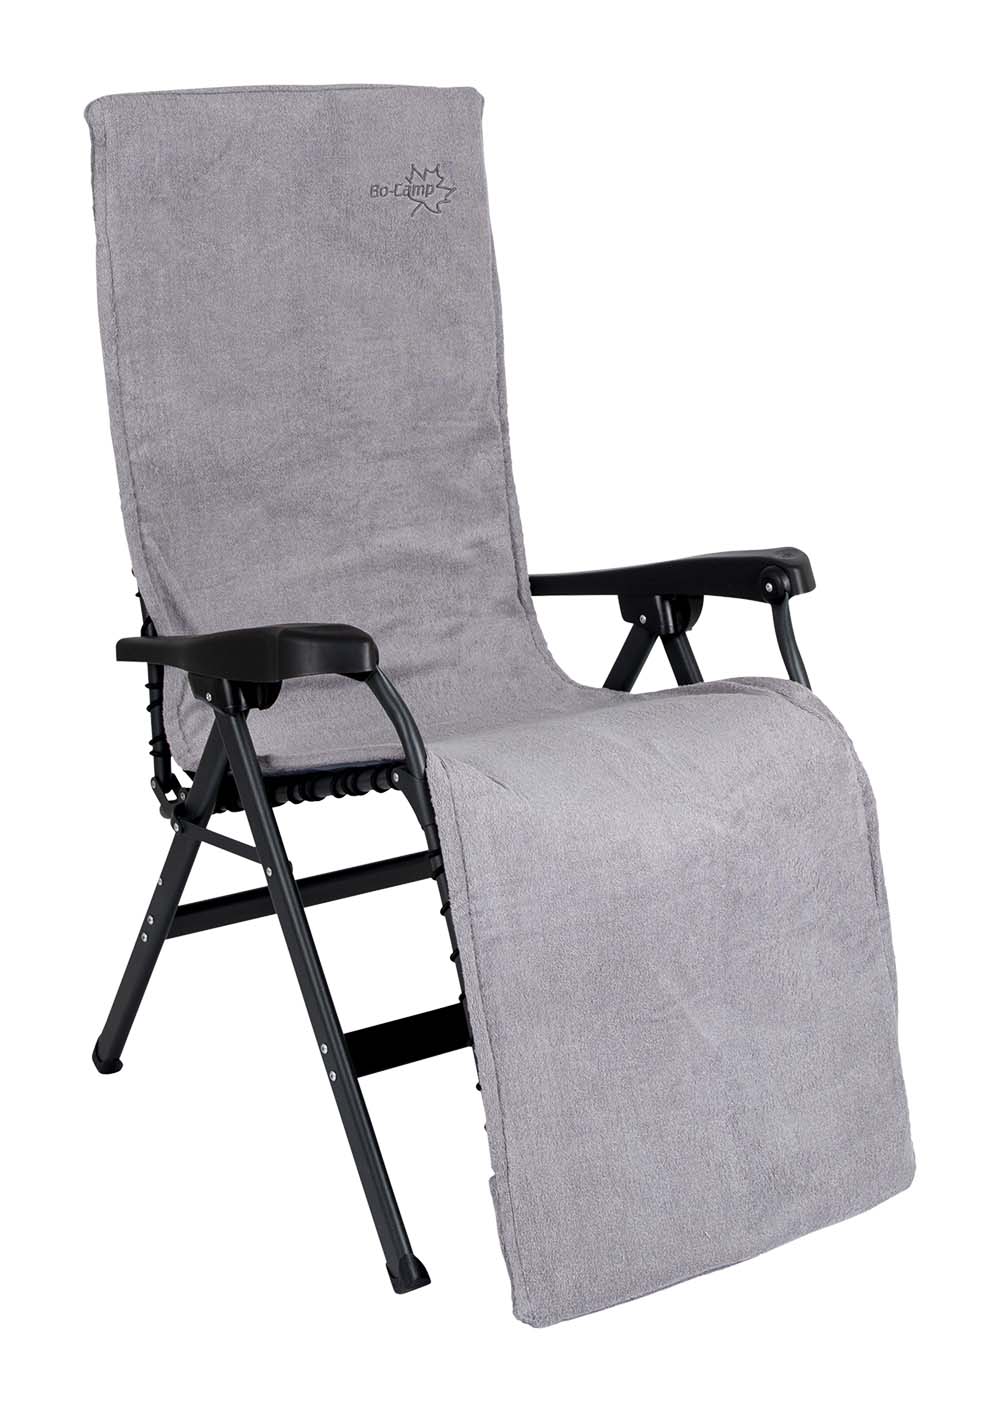 1849282 Een extra zachte stoelhoes voor (kampeer)stoelen. Deze universele stoelhoes zorgt voor optimaal zitcomfort en biedt bescherming aan de stoel. Extra comfortabel door het gepolsterde badstof. De stoelhoes is universeel toepasbaar.